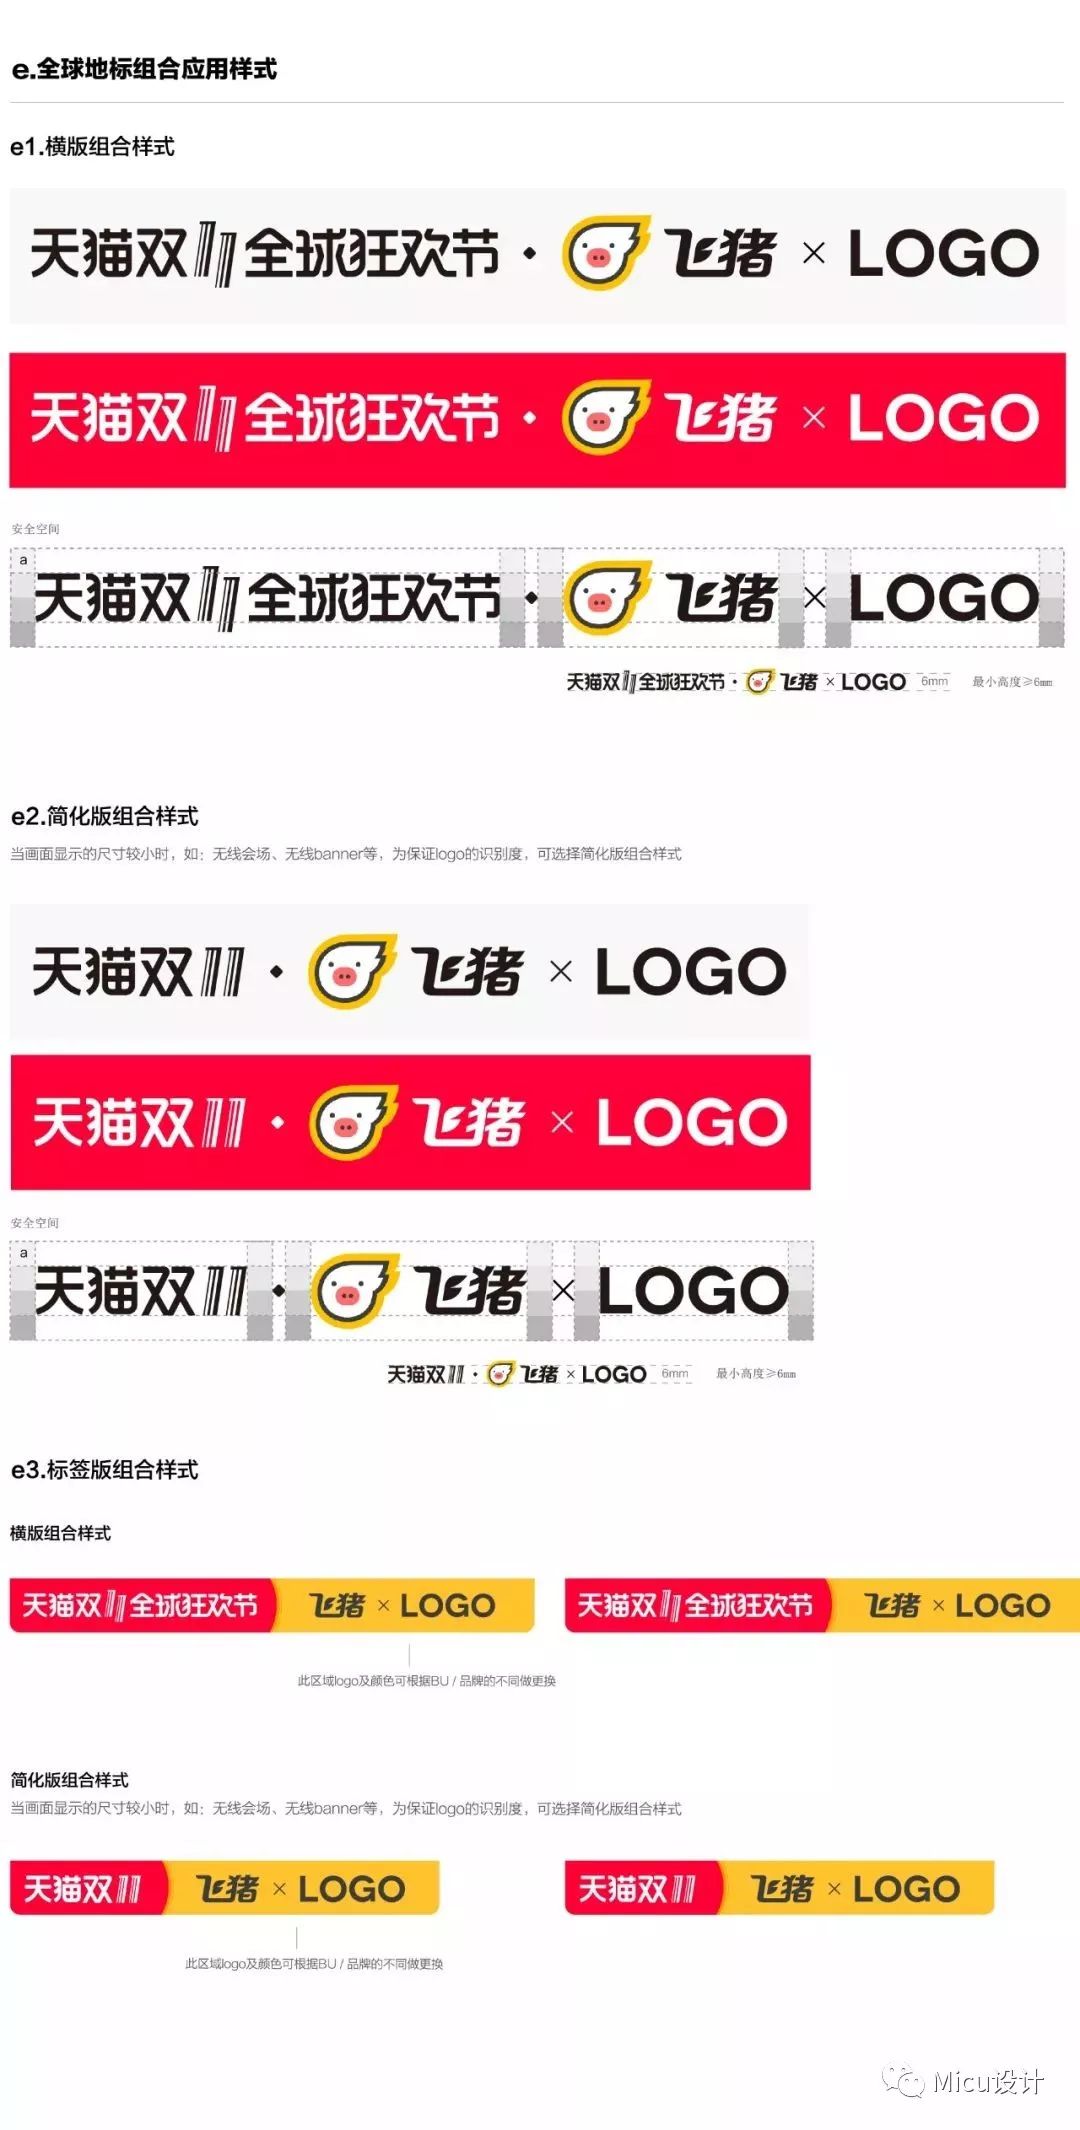 天猫双十一logo设计理念,讲解天猫logo演变过程,天猫双十一logo